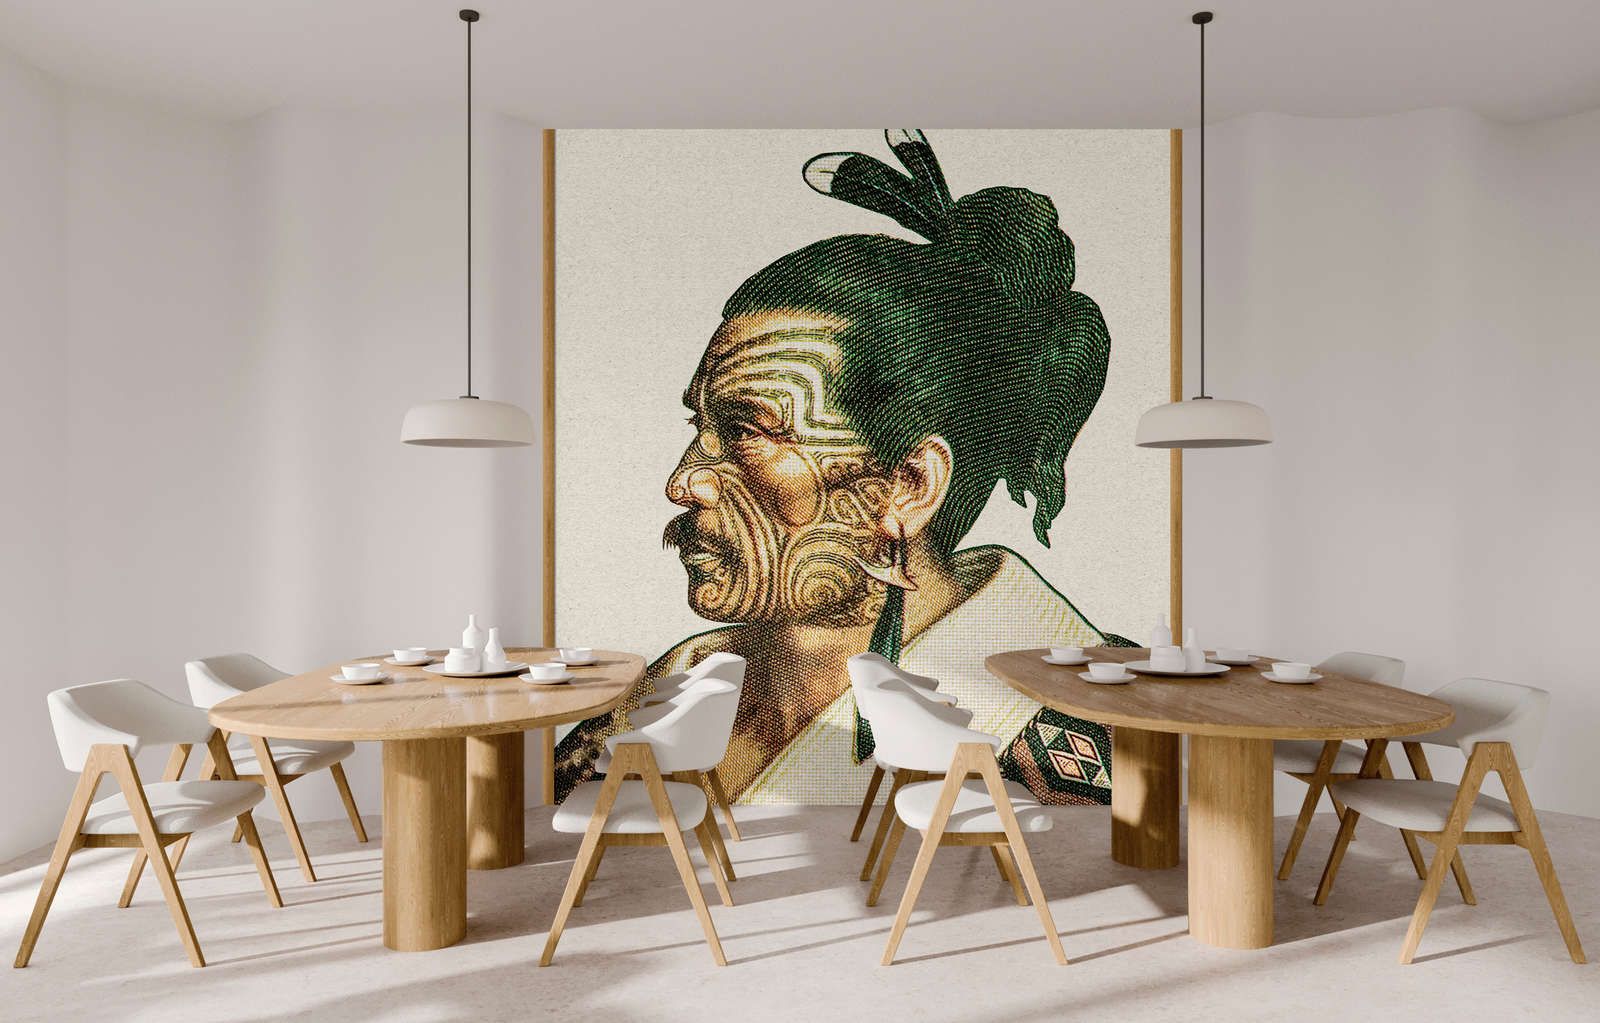             Fotobehang »horishi« - Afrikaans portret in pixelstijl met kraftpapiertextuur - Glad, licht glanzend premium vliesmateriaal
        